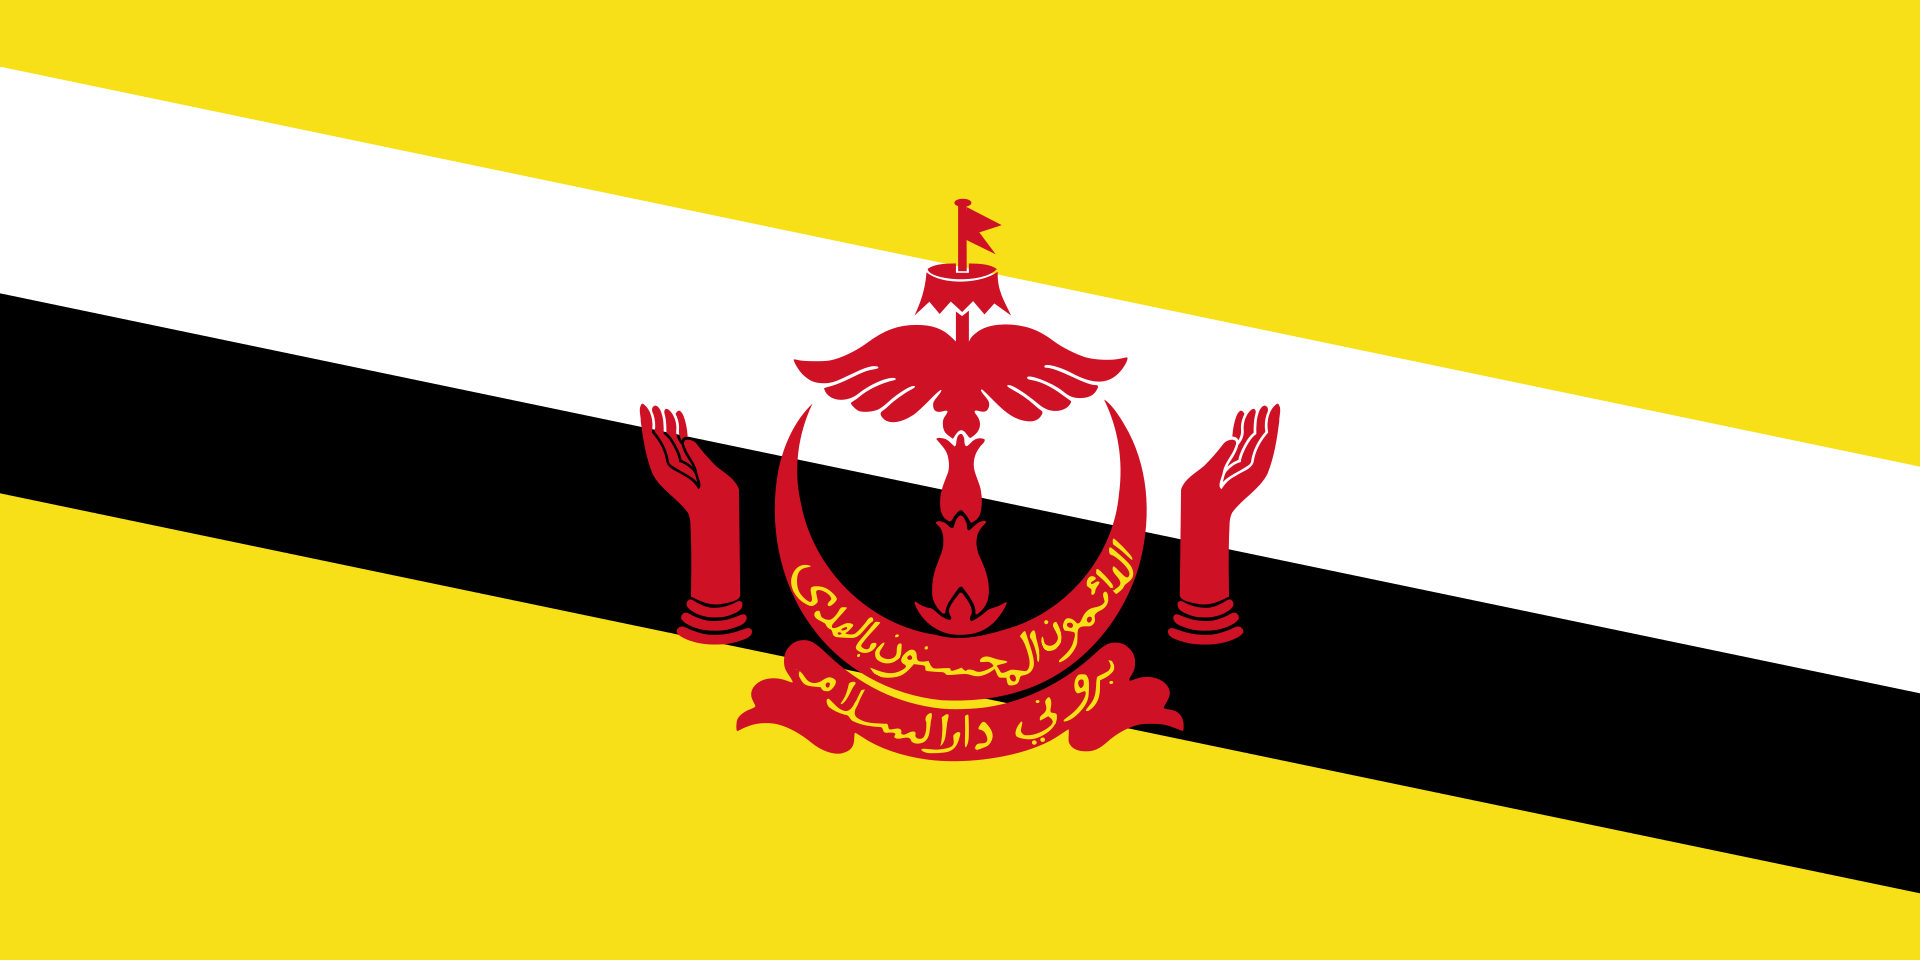 Điện mừng Quốc khánh Brunei Darussalam năm nay tràn đầy sắc màu phong phú, tượng trưng cho sự đoàn kết và hy vọng tương lai. Hãy xem hình ảnh để cùng chia sẻ niềm vui, hân hoan của người dân Brunei trong ngày lễ quan trọng này.